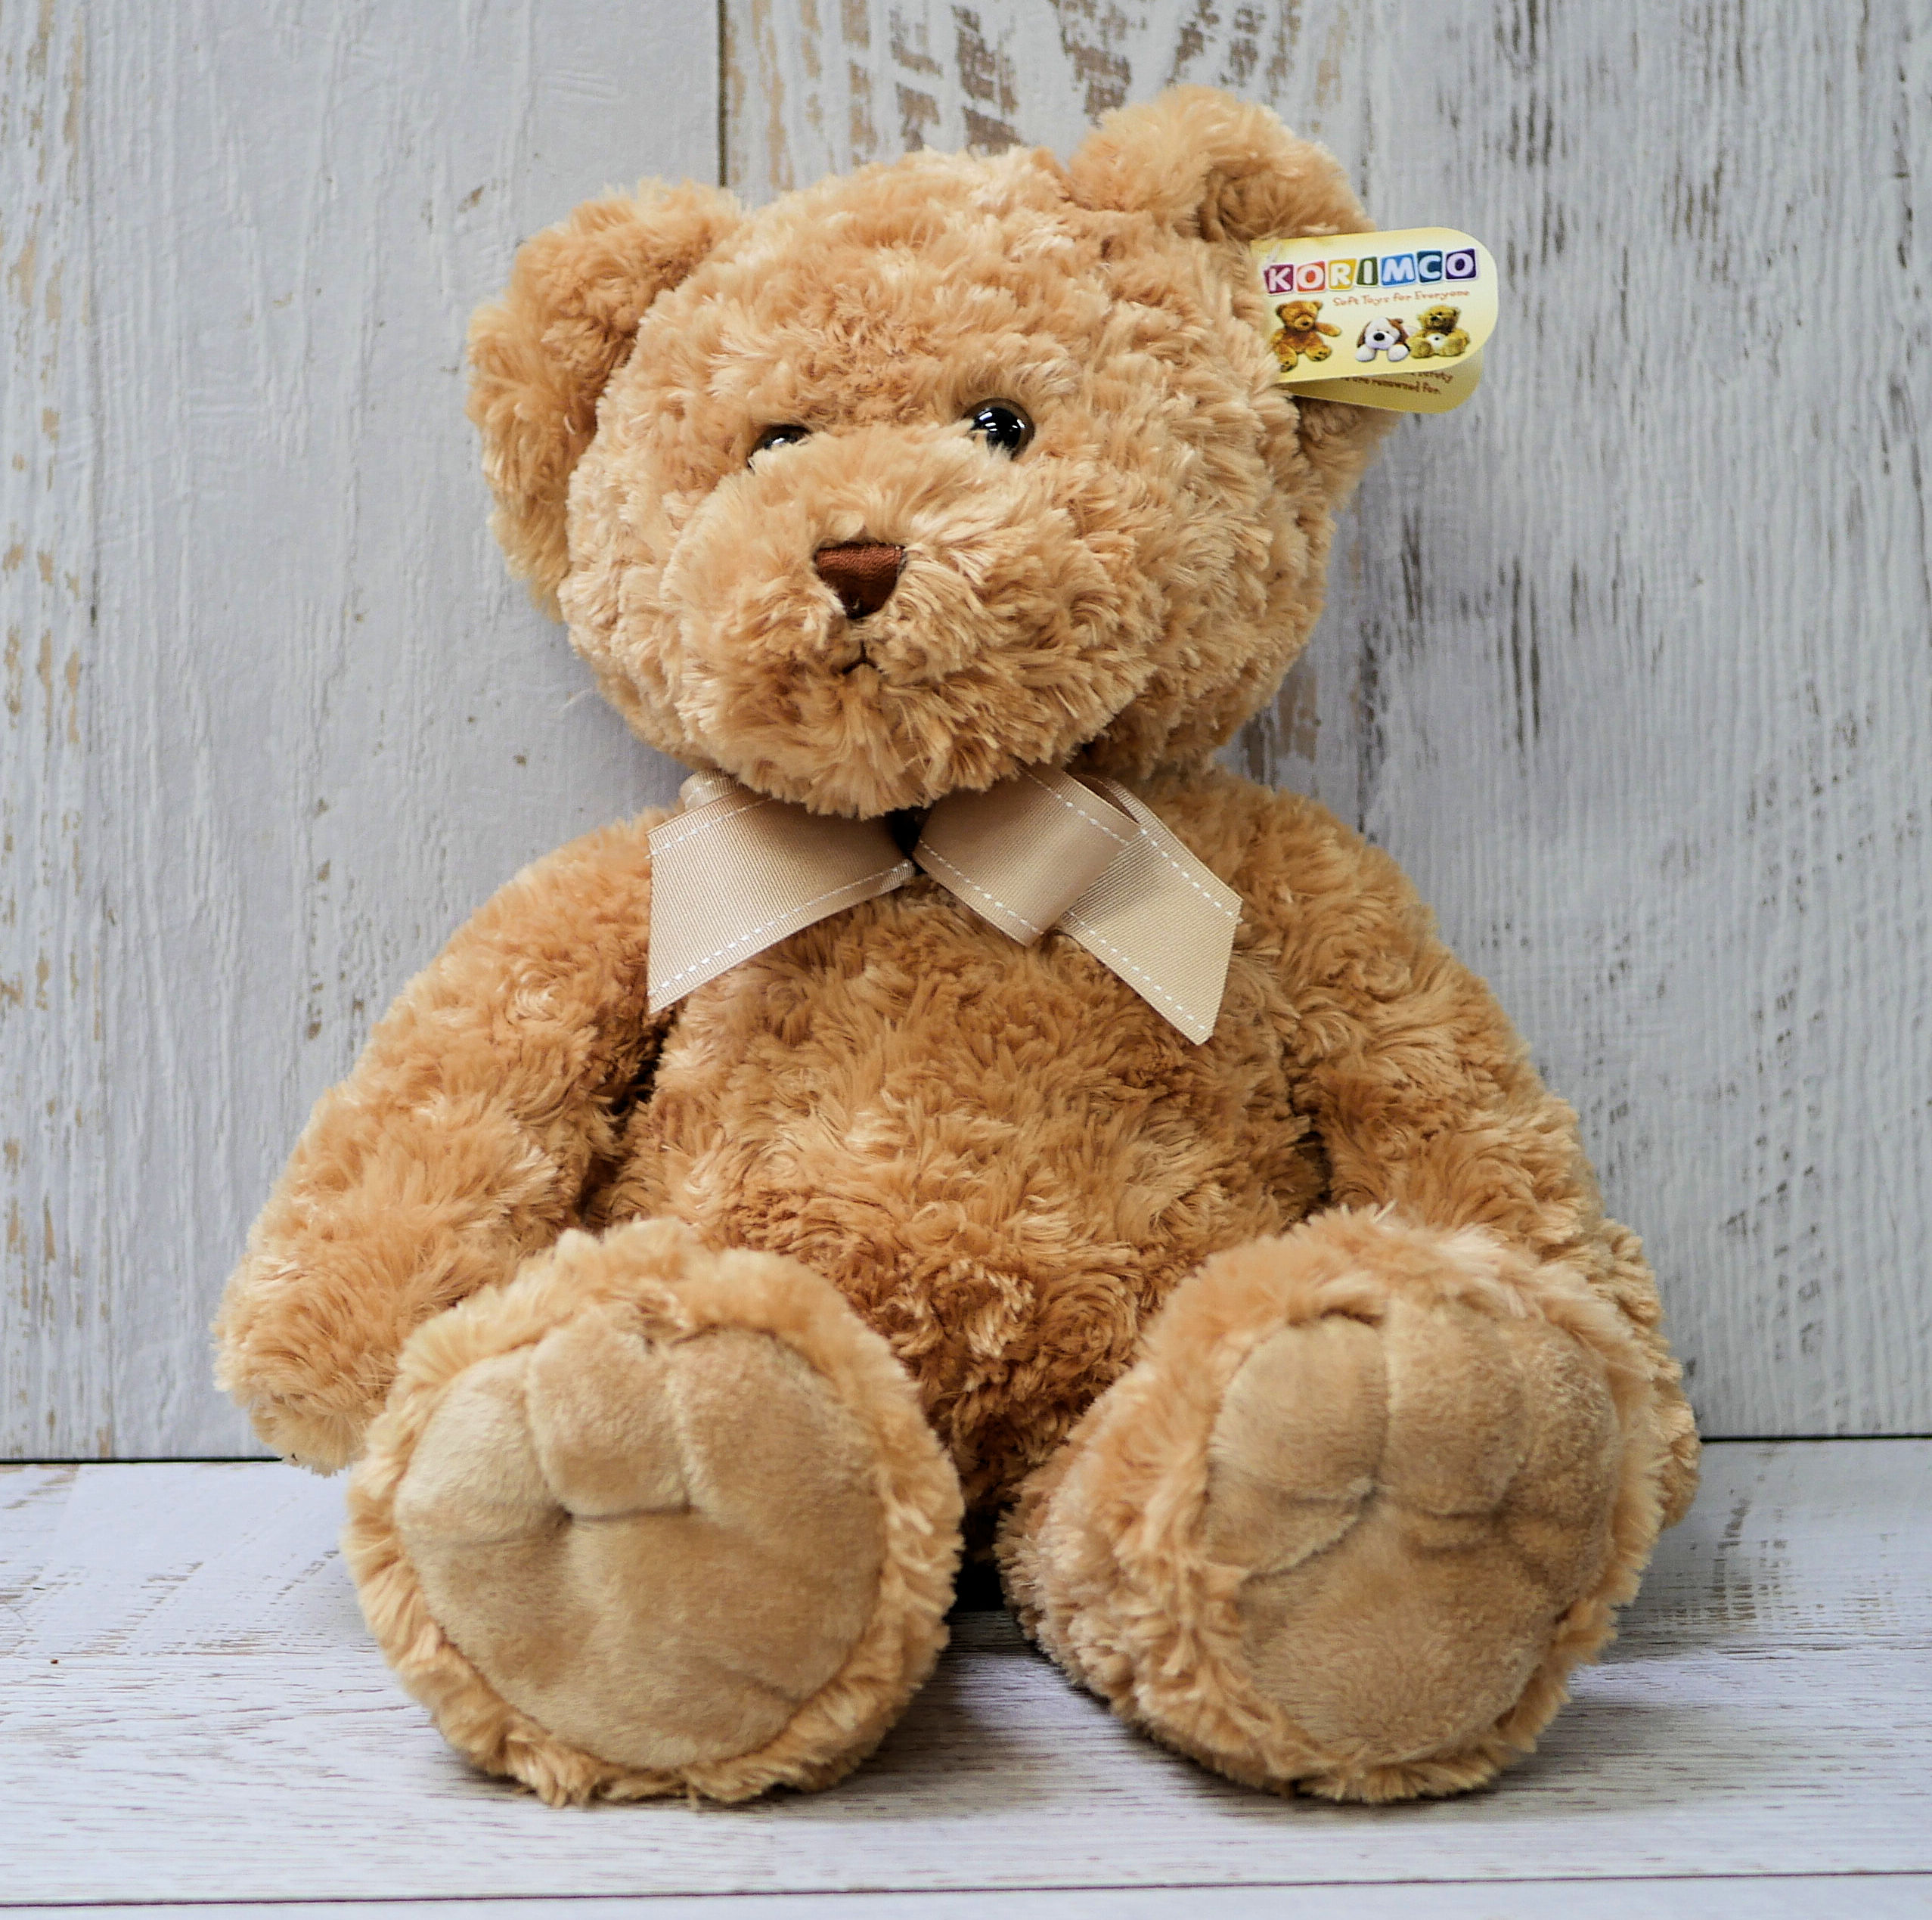 huggable teddy bear